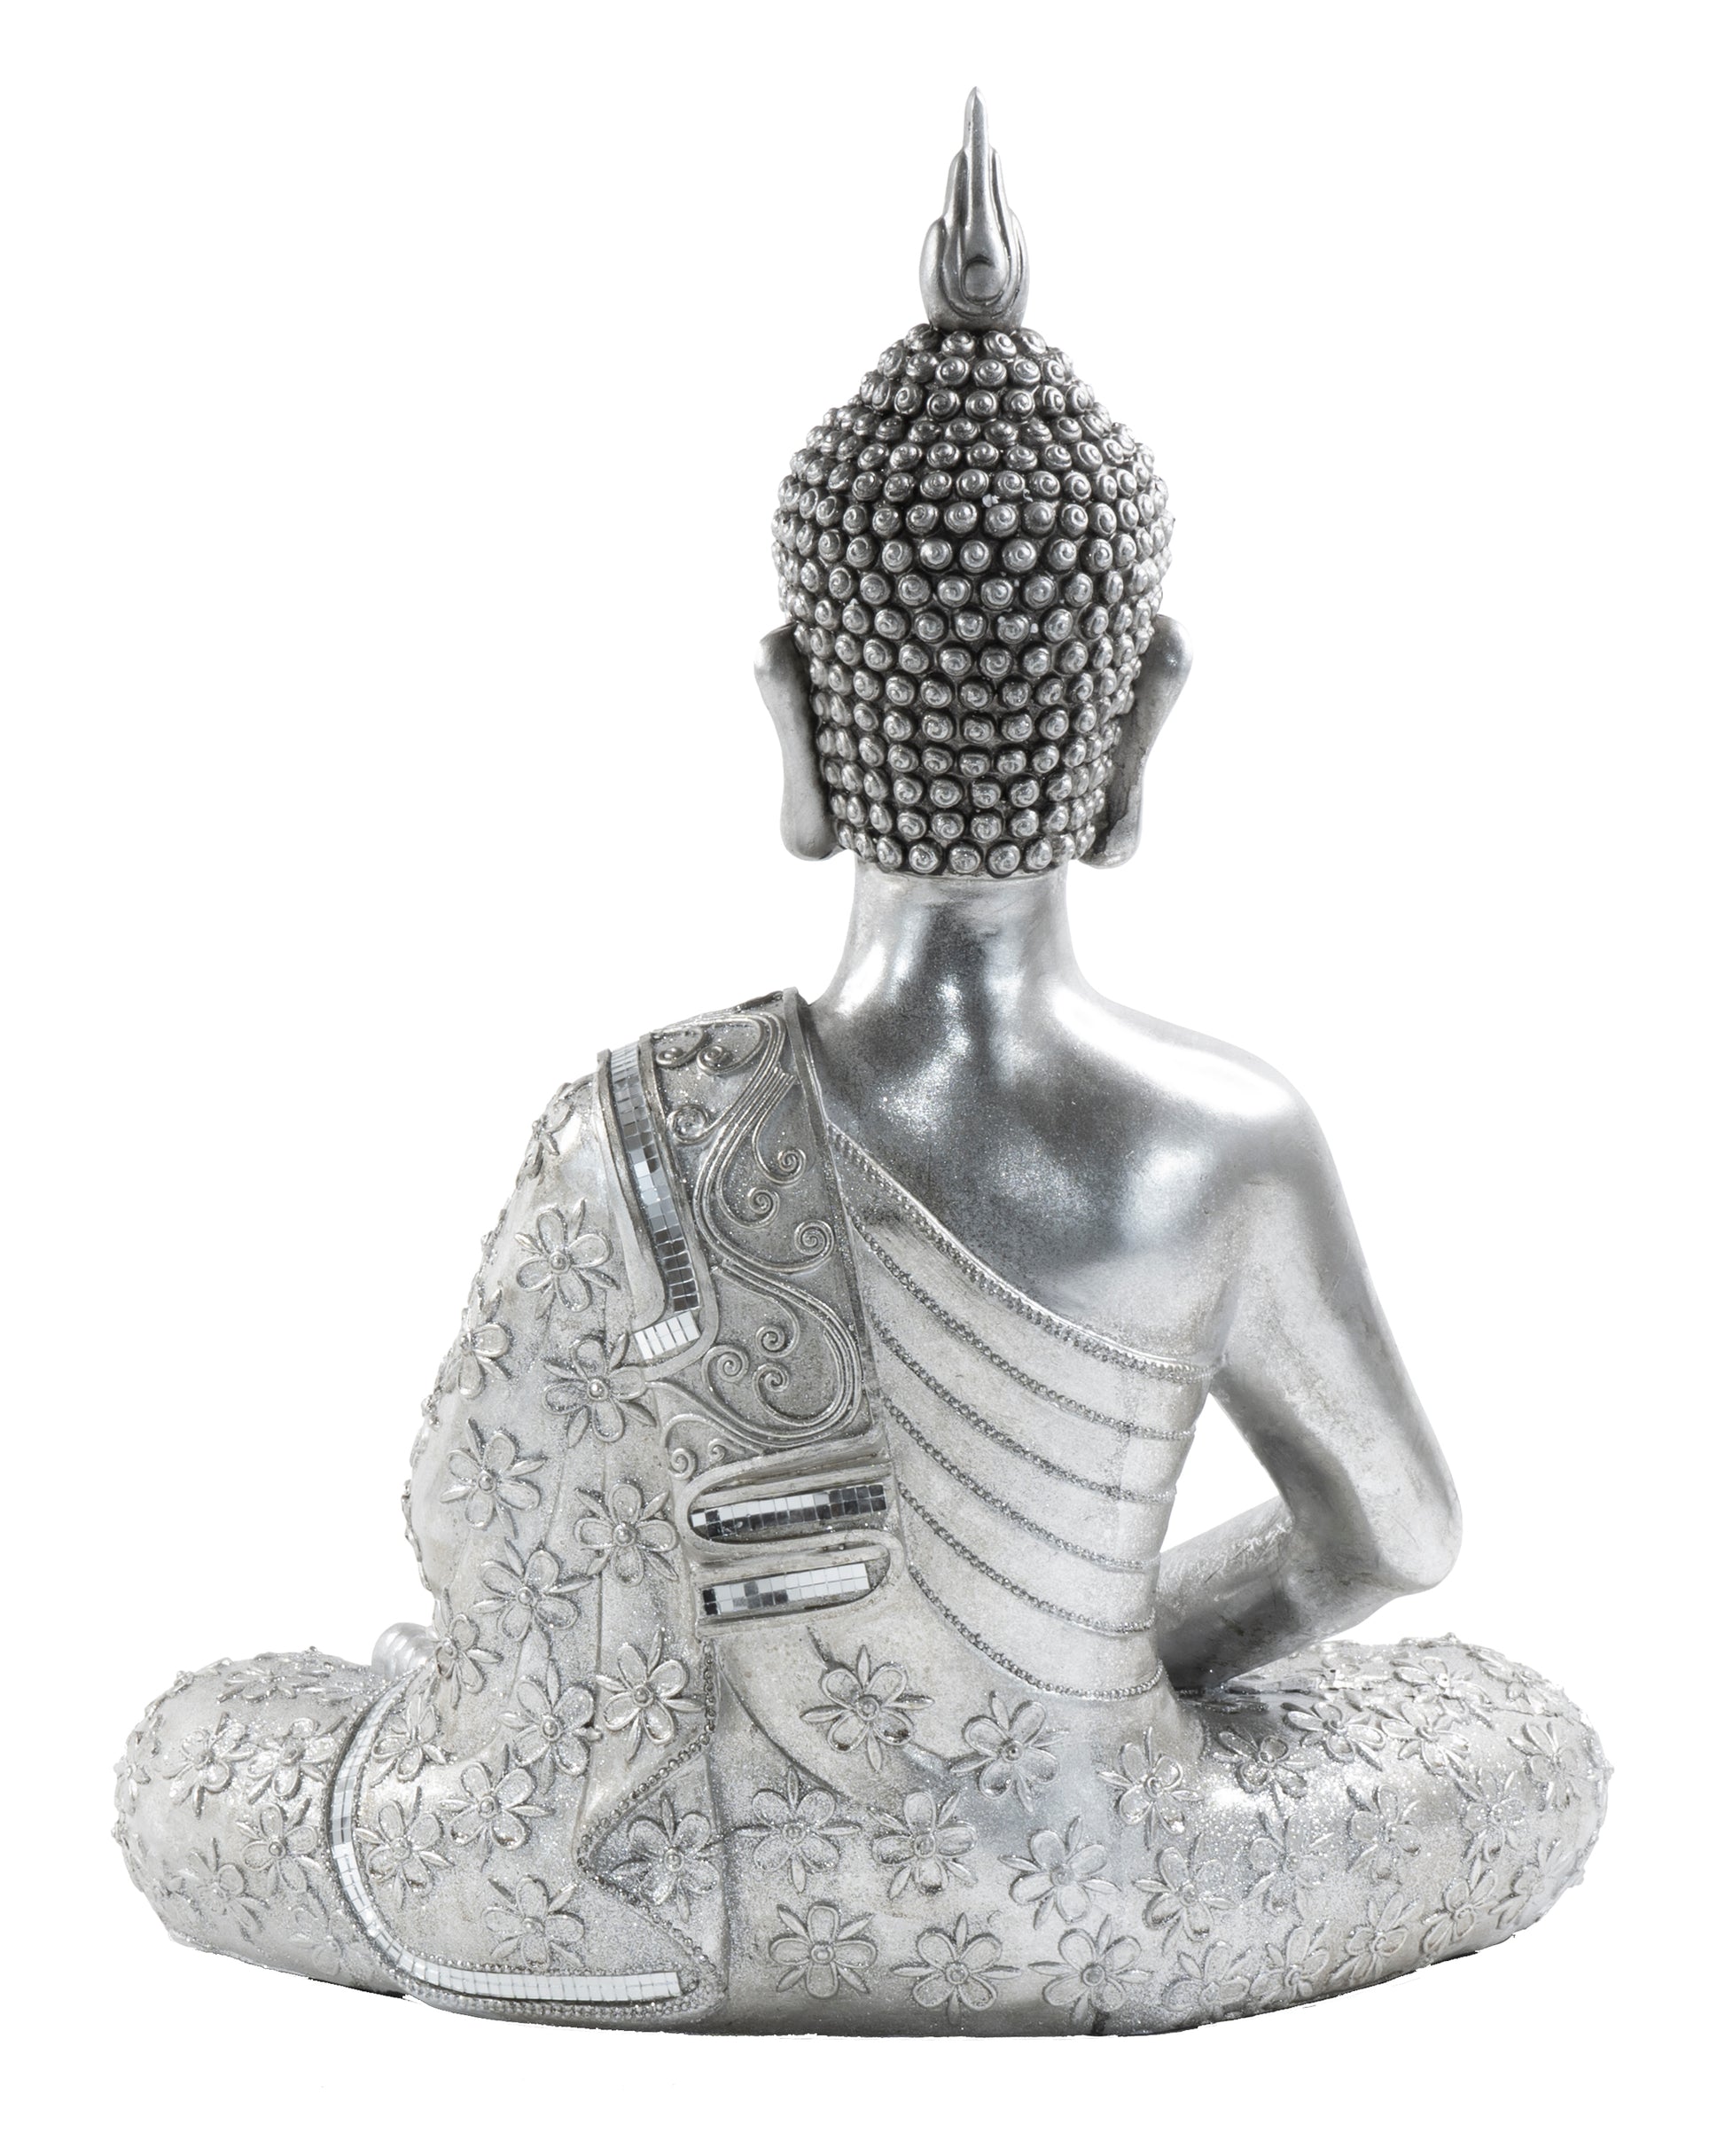 Tabletop Buddha Sculpture - Expo Home Decor